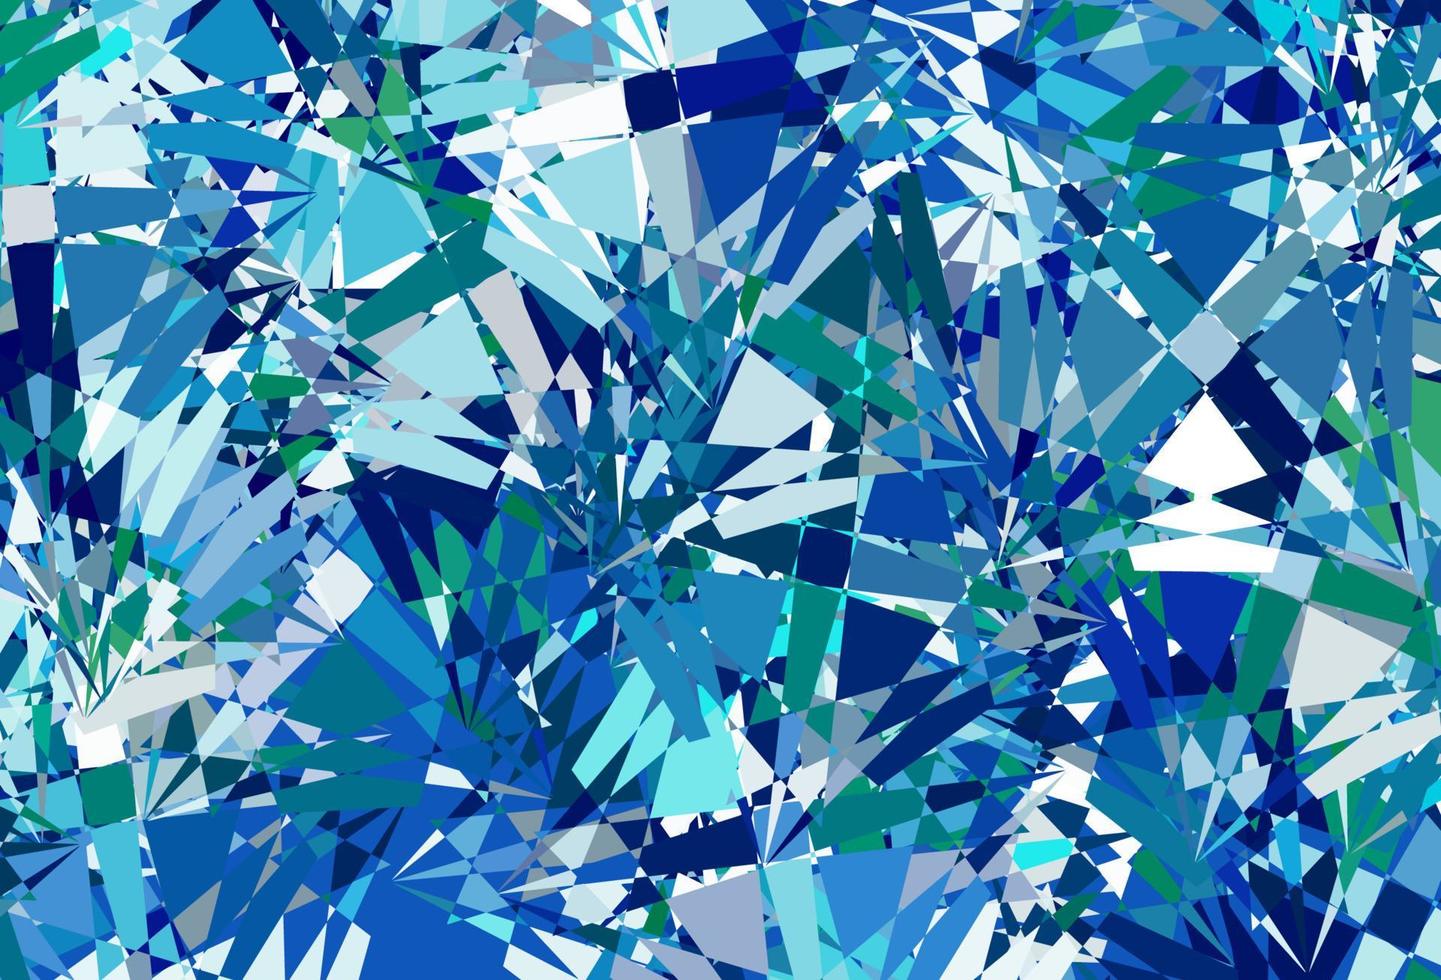 dunkelblaues, grünes Vektorlayout mit Dreiecksformen. vektor